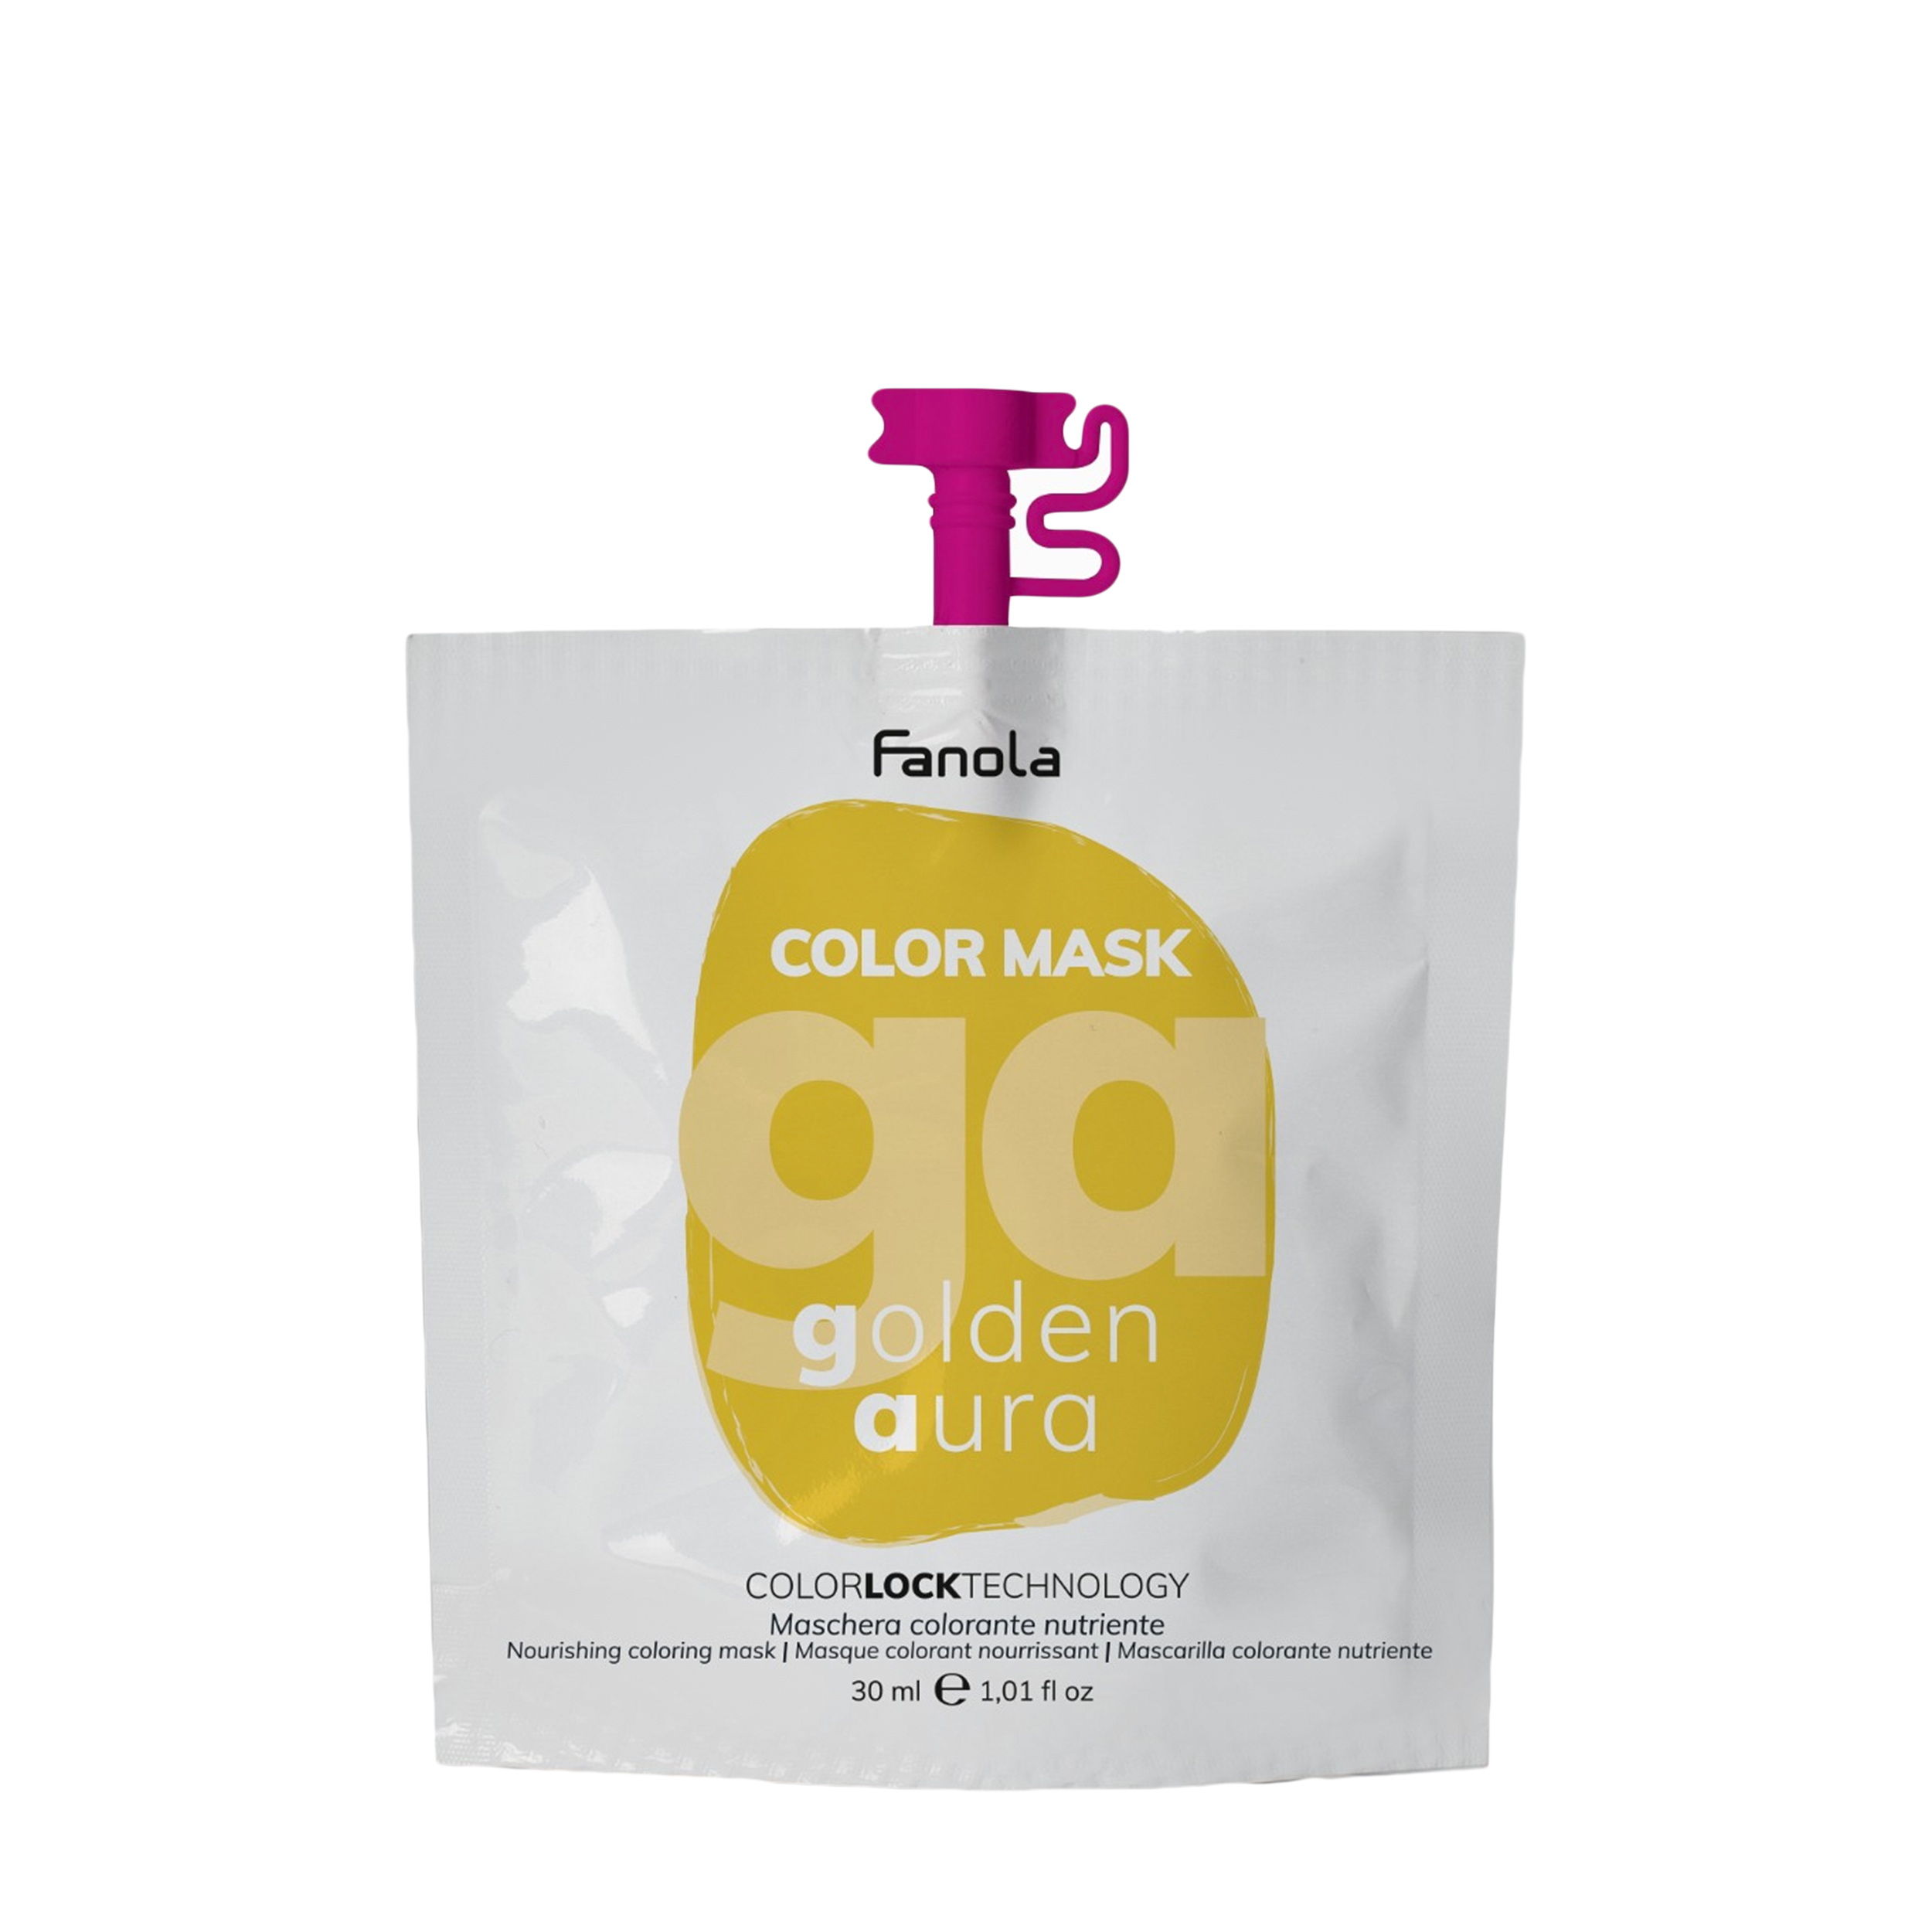 Fanola Fanola Оттеночная маска для волос Color Mask, оттенок золотистый 30 мл